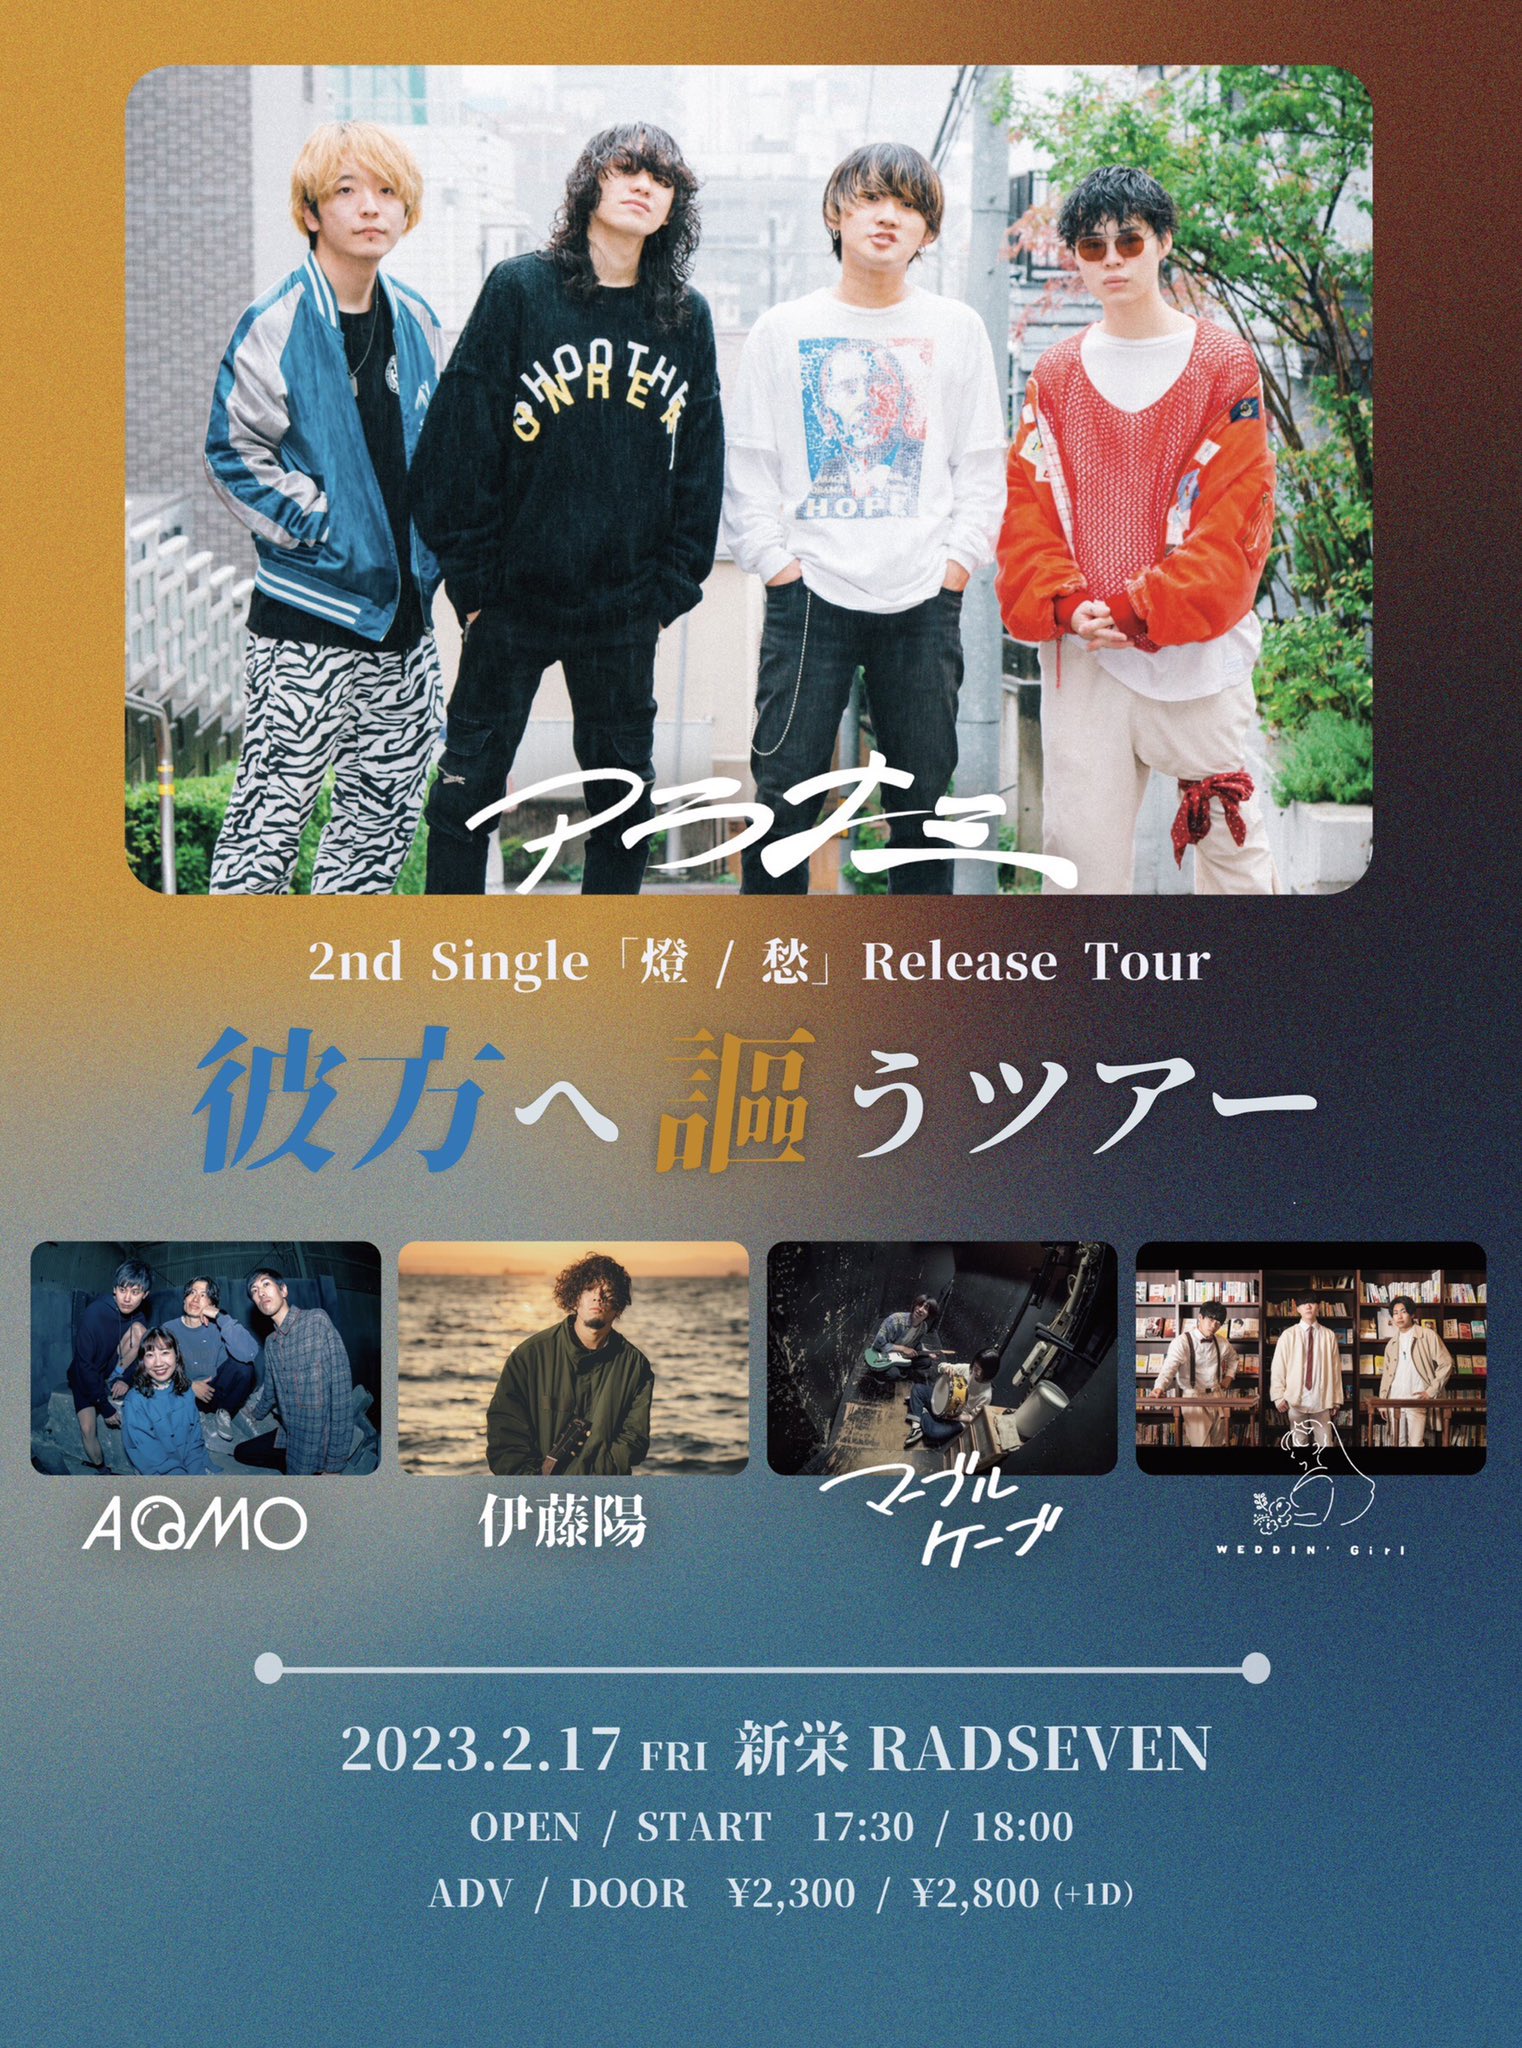 アラナミ 2nd Single「燈 / 愁」Release Tour " 彼方へ謳うツアー "